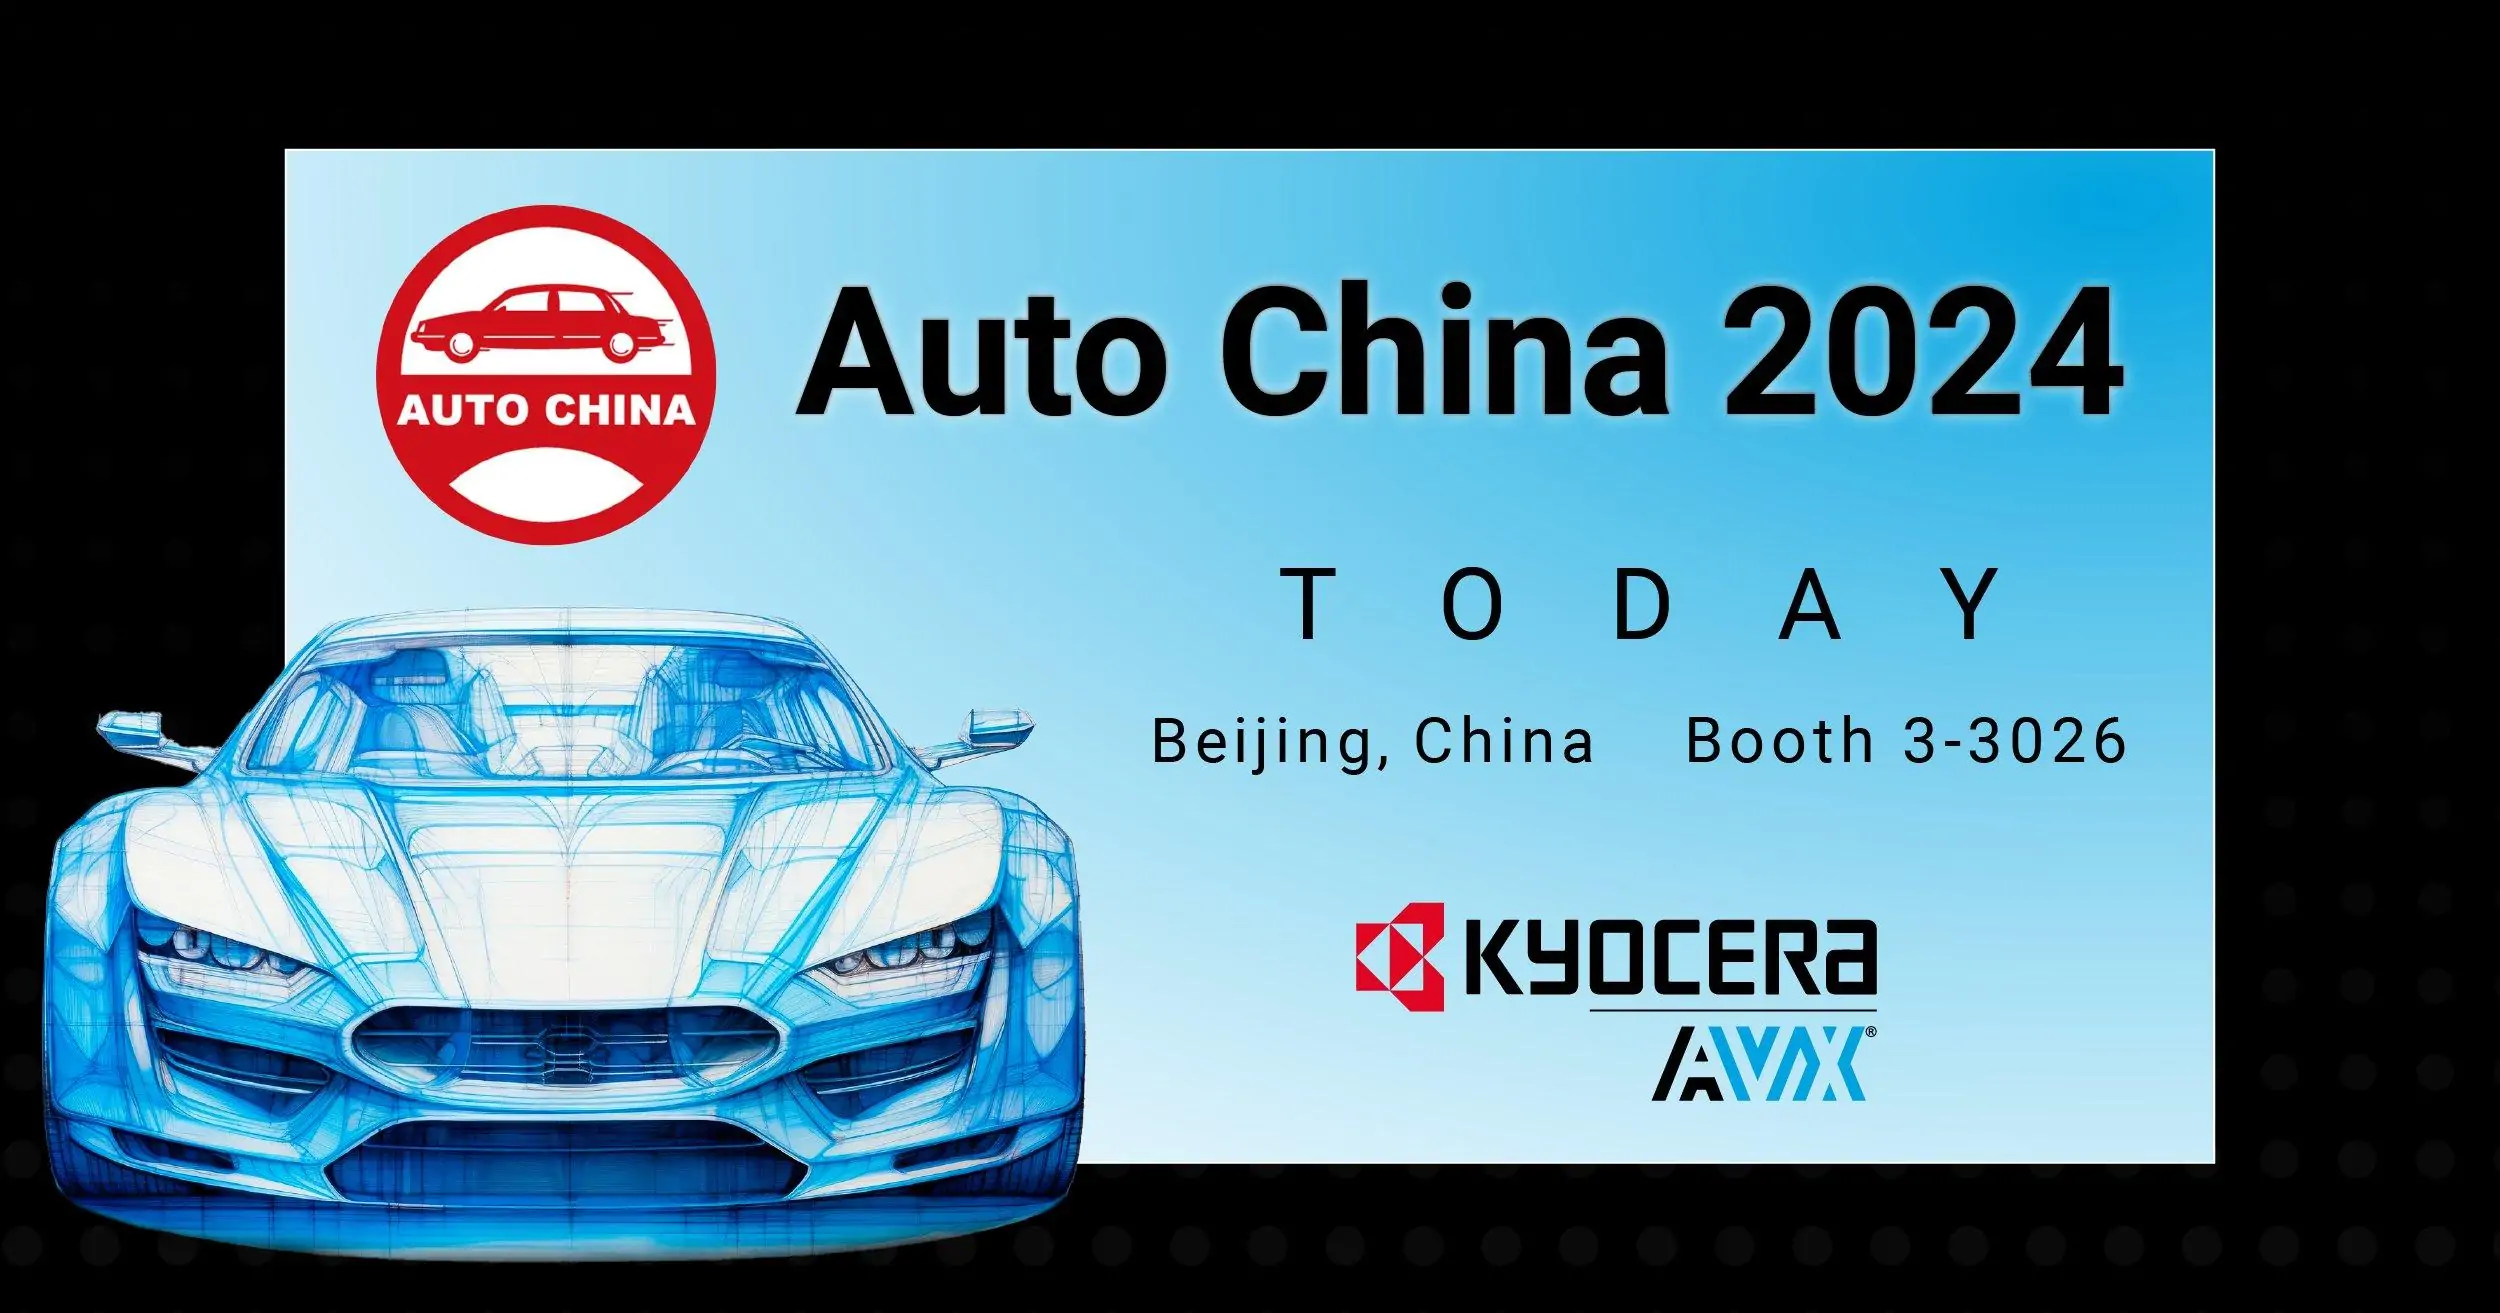 معرض بكين 2024 للسيارات الأكبر على وجه الأرض تتصدره العلامات الصينية ..شاهد واستمتع